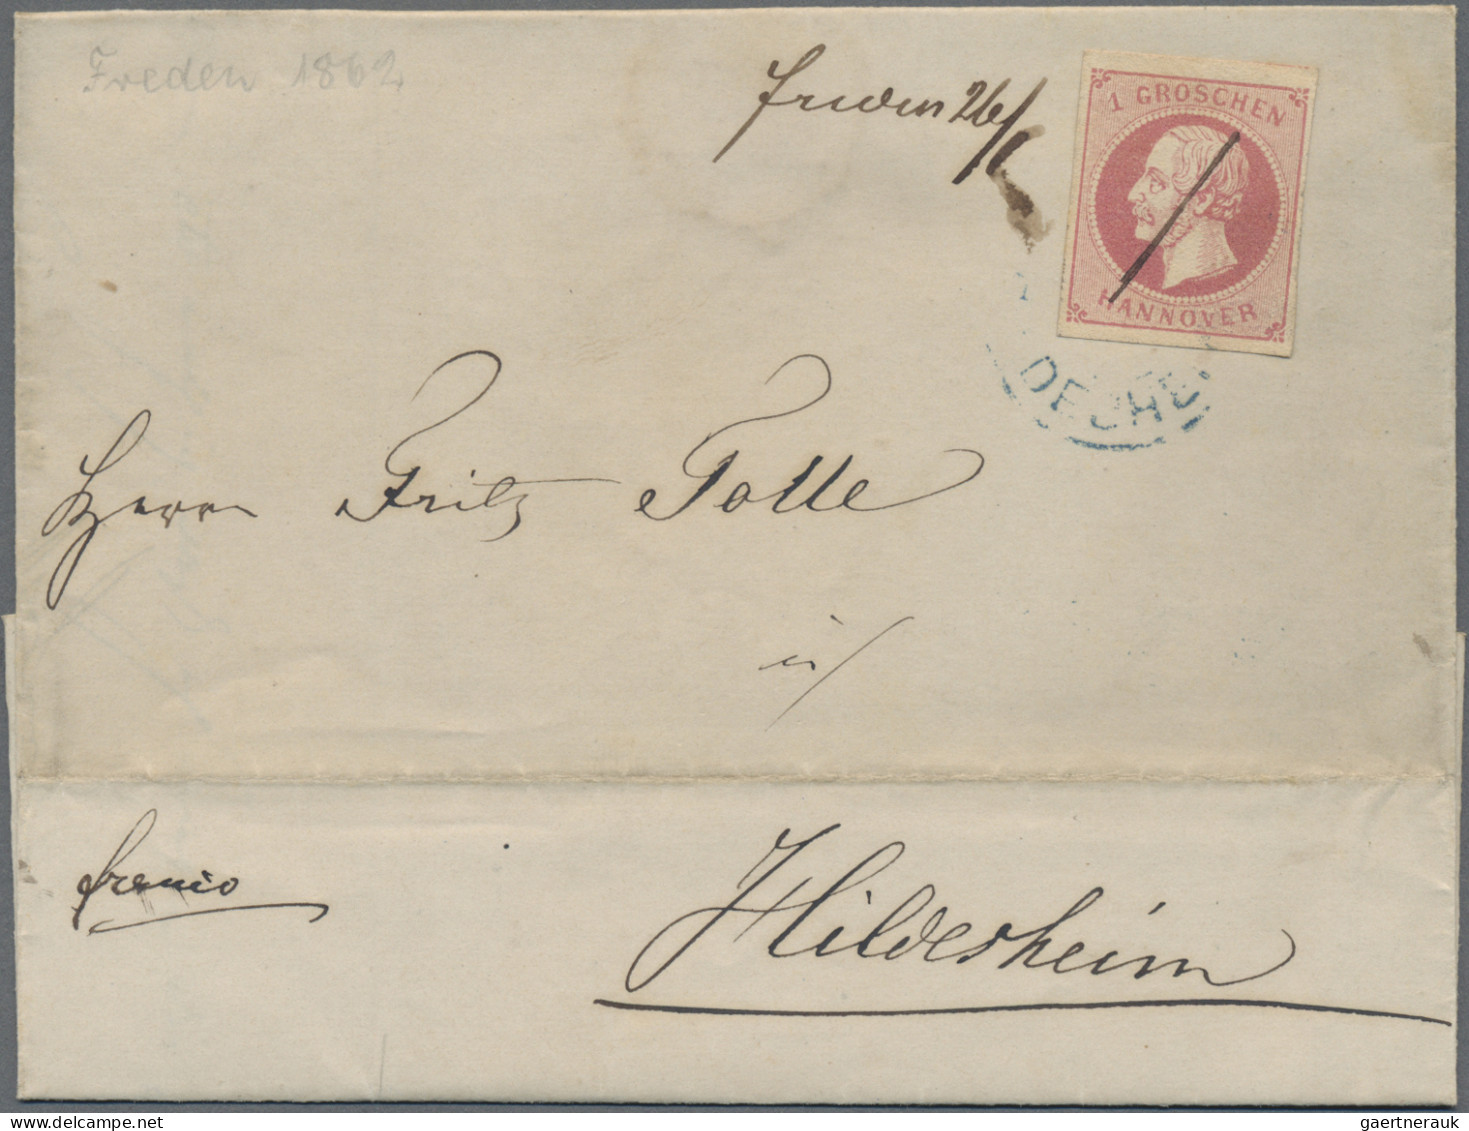 Hannover - Marken und Briefe: 1808/1868 (ca.), Sammlung von ca. 56 meist markenl